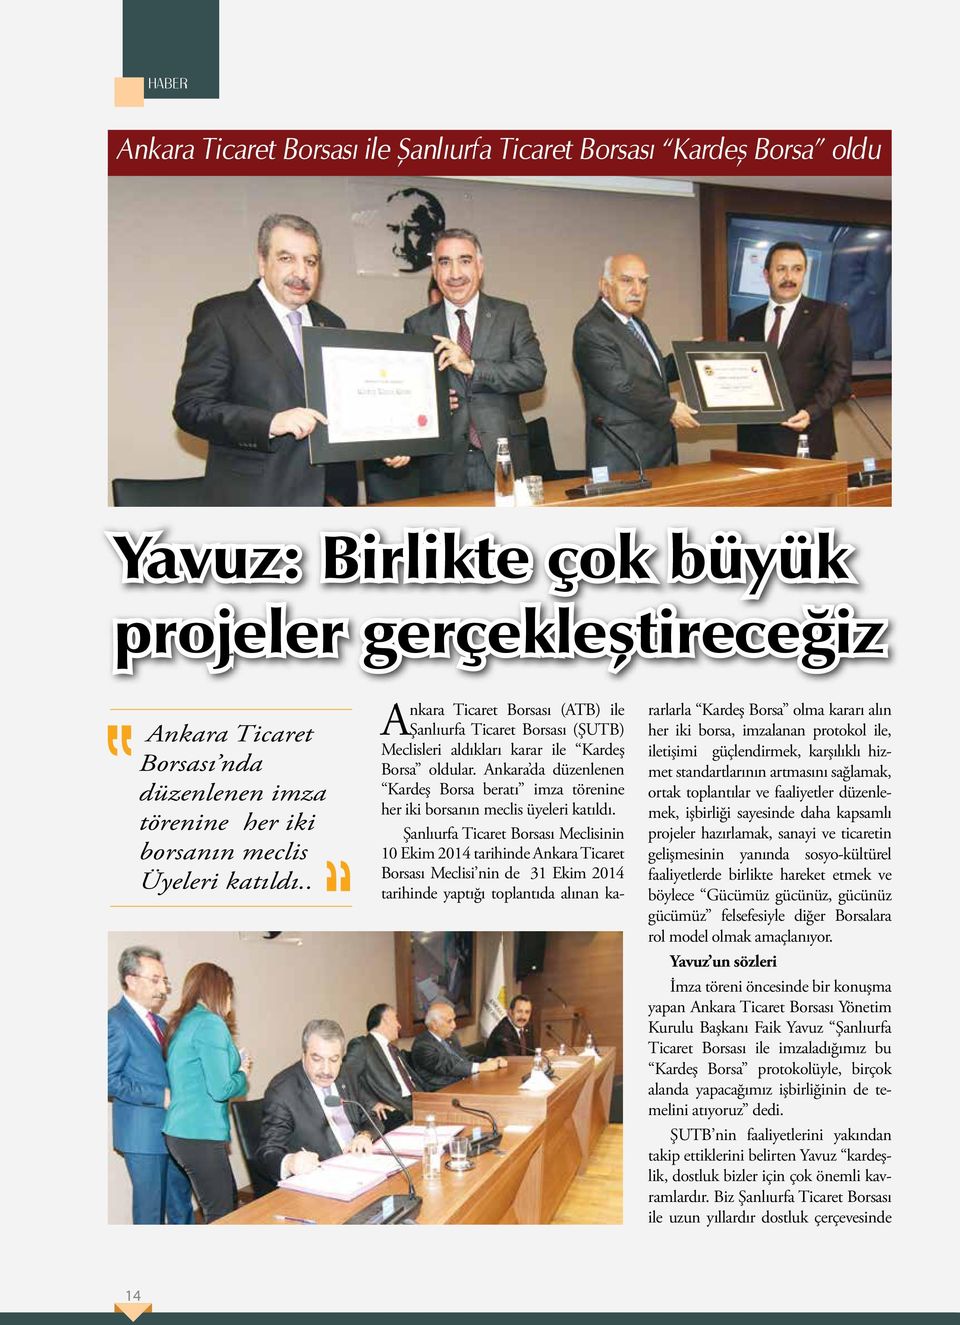 Ankara da düzenlenen Kardeş Borsa beratı imza törenine her iki borsanın meclis üyeleri katıldı.